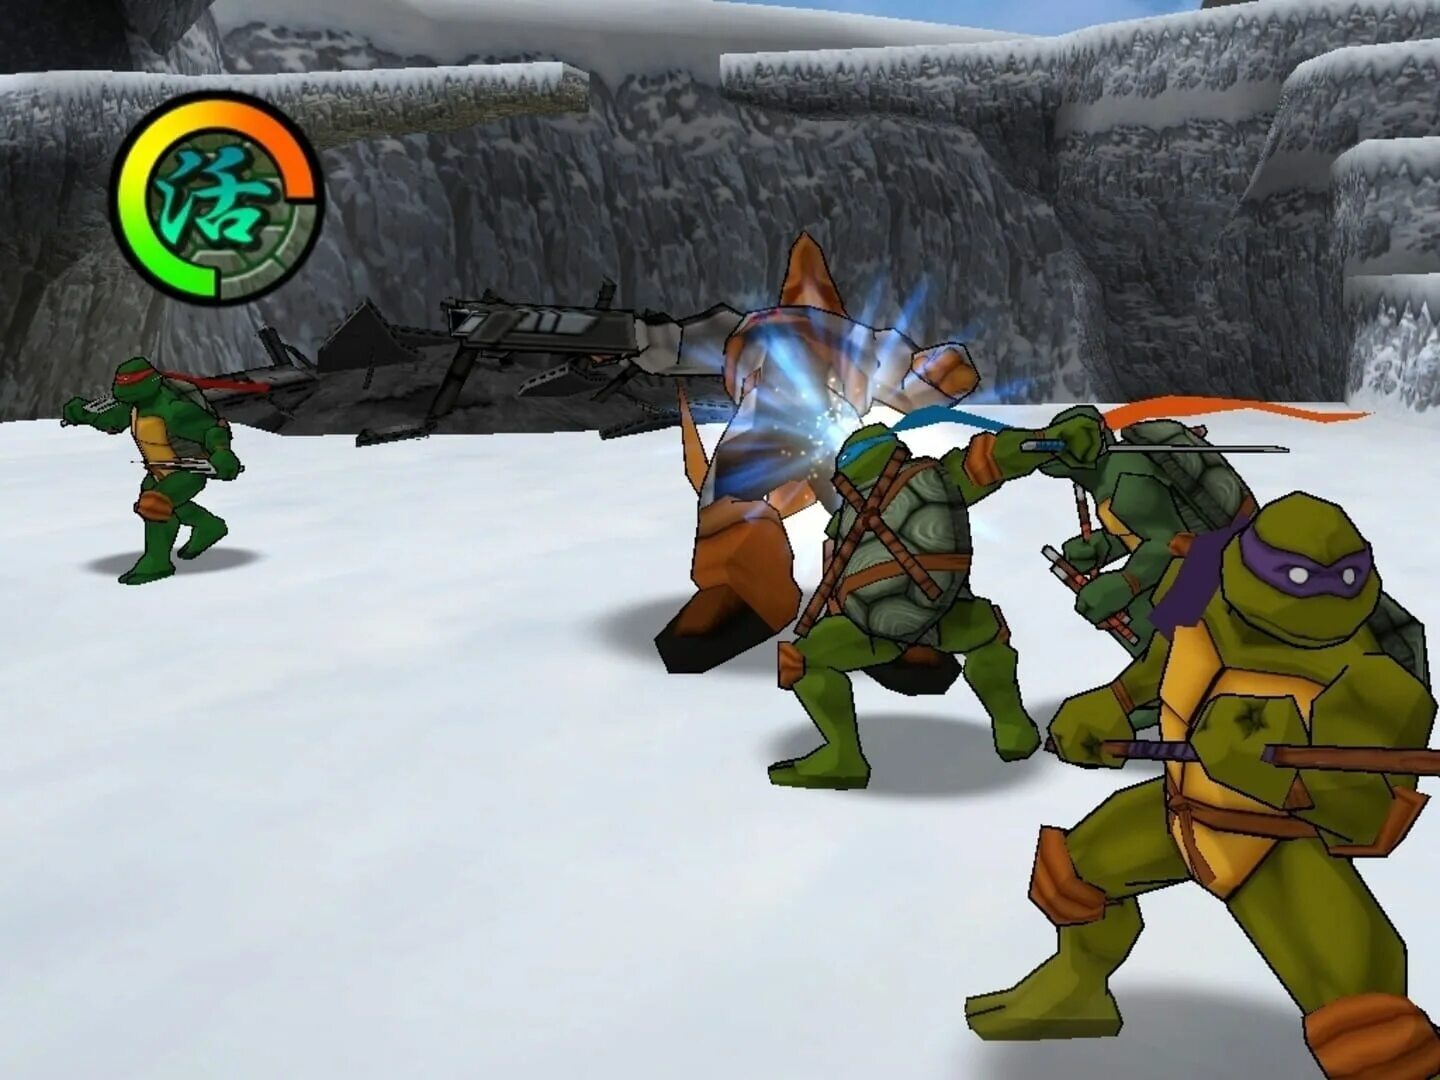 TMNT 2 Battle Nexus. Teenage Mutant Ninja Turtles 2 Battle Nexus. TMNT 2003 2 Battle Nexus. Teenage Mutant Ninja Turtles (игра, 2003). State of survival черепашки ниндзя